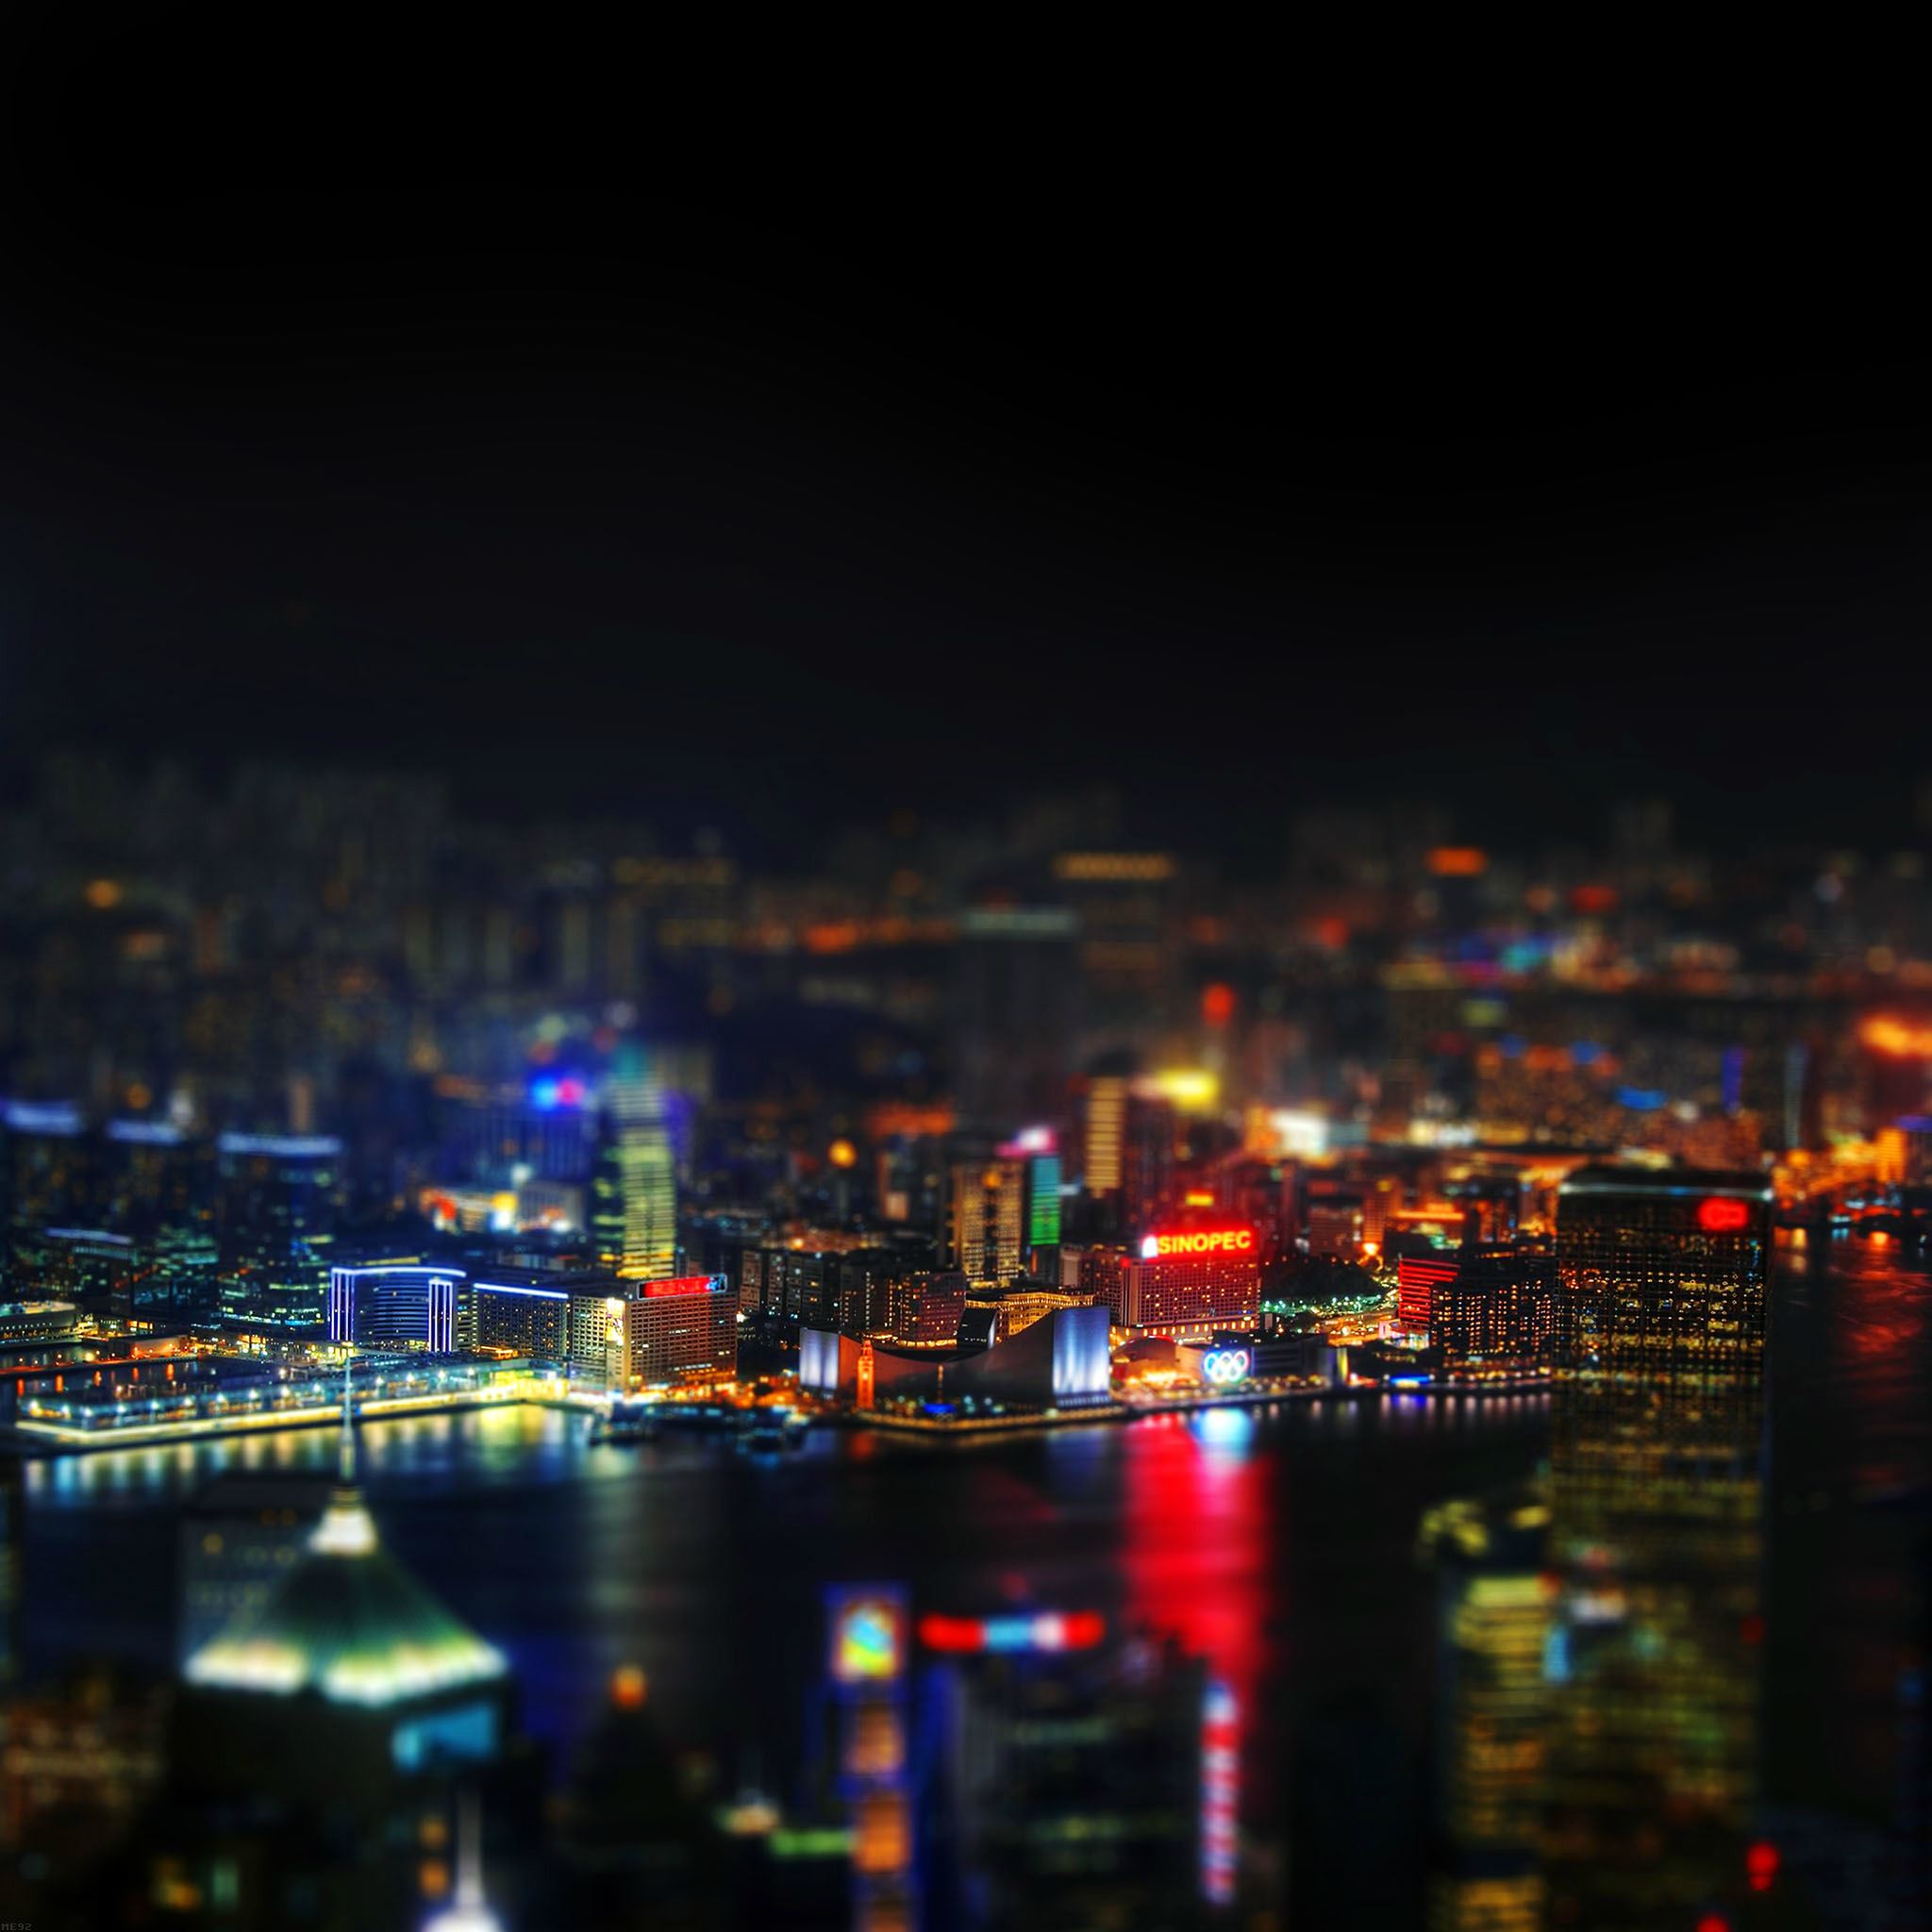 Hongkong Night Cityscapes Lights iPad Air wallpaper 